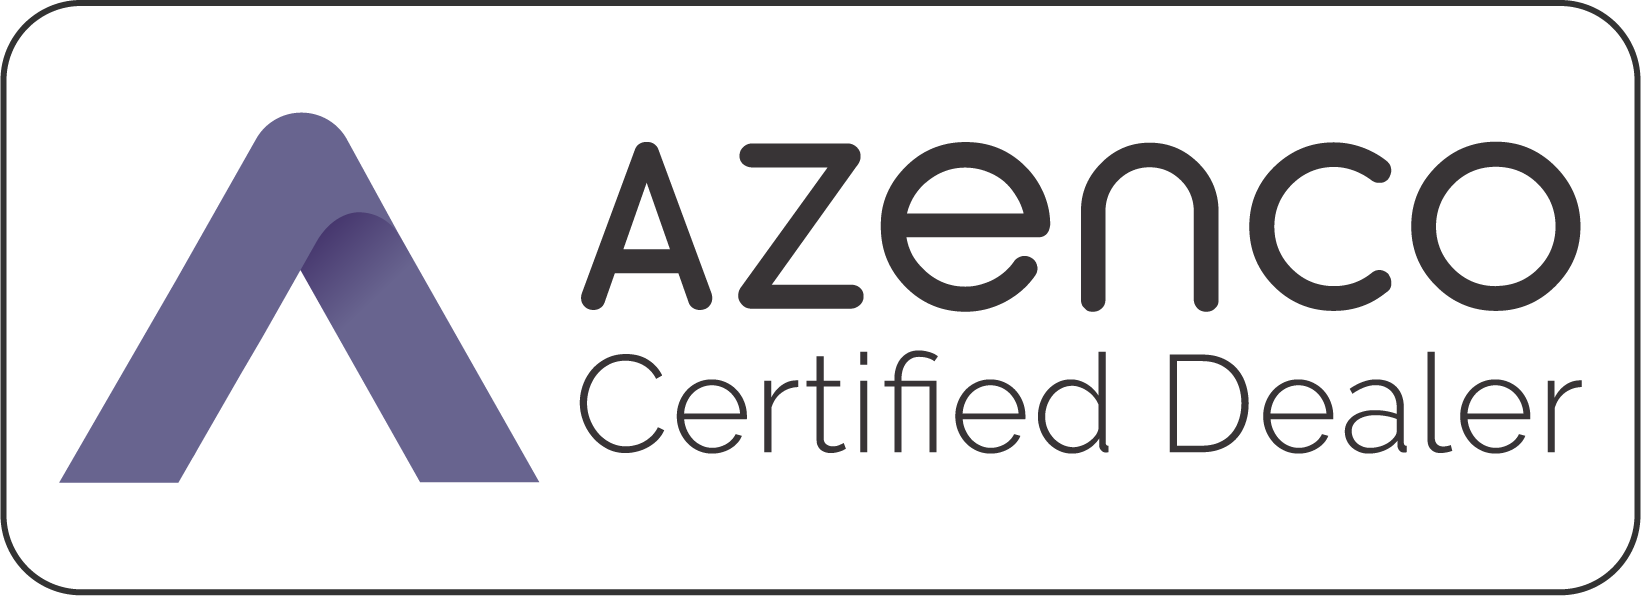 azenco outdoor - certified dealer